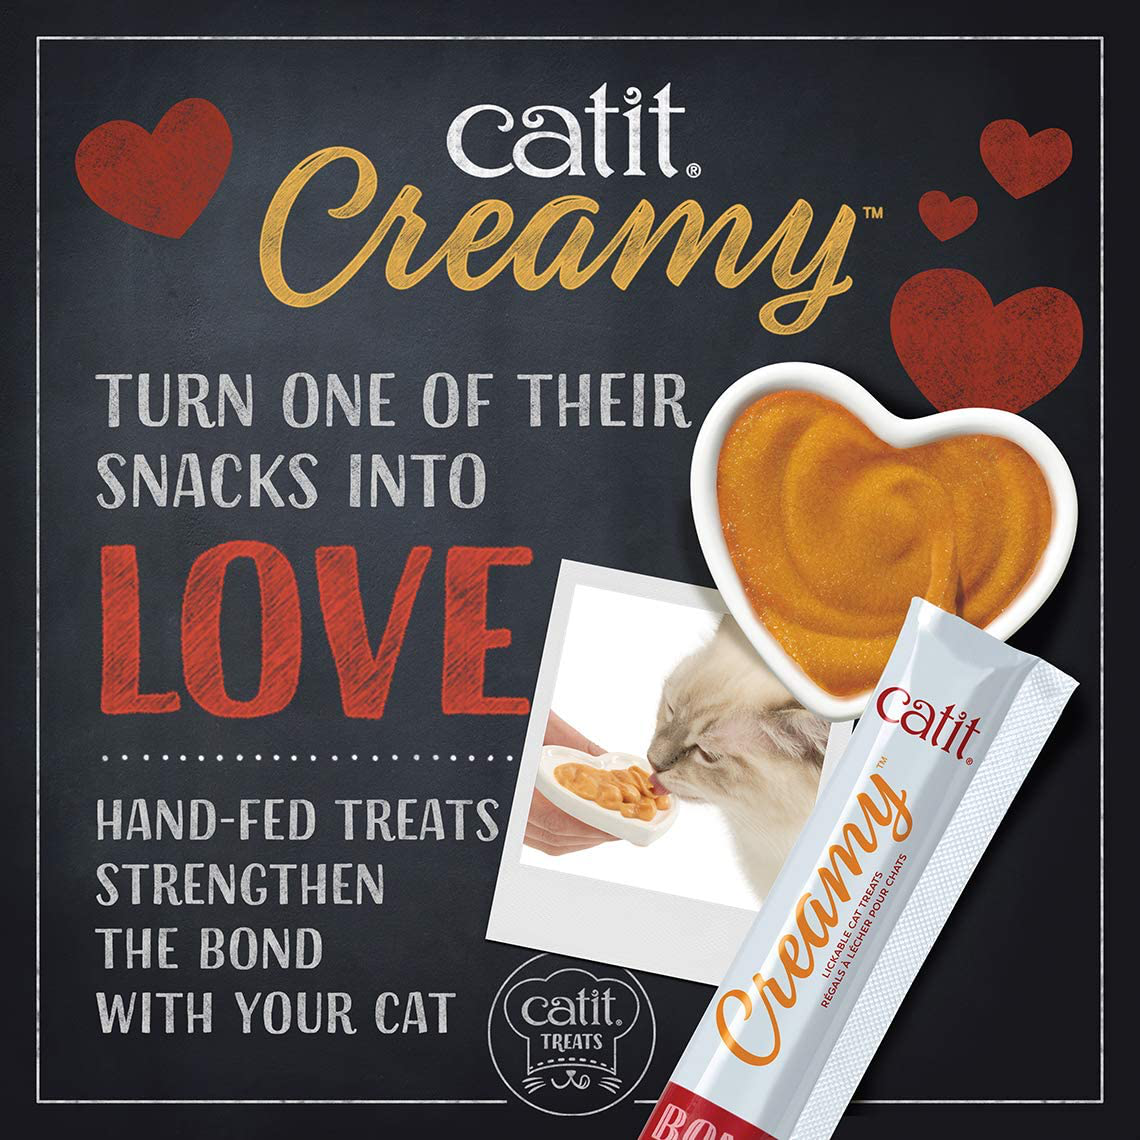 Catit Creamy Lickable Cat Treat, Healthy Cat Treat, Assortment, 12 Pack